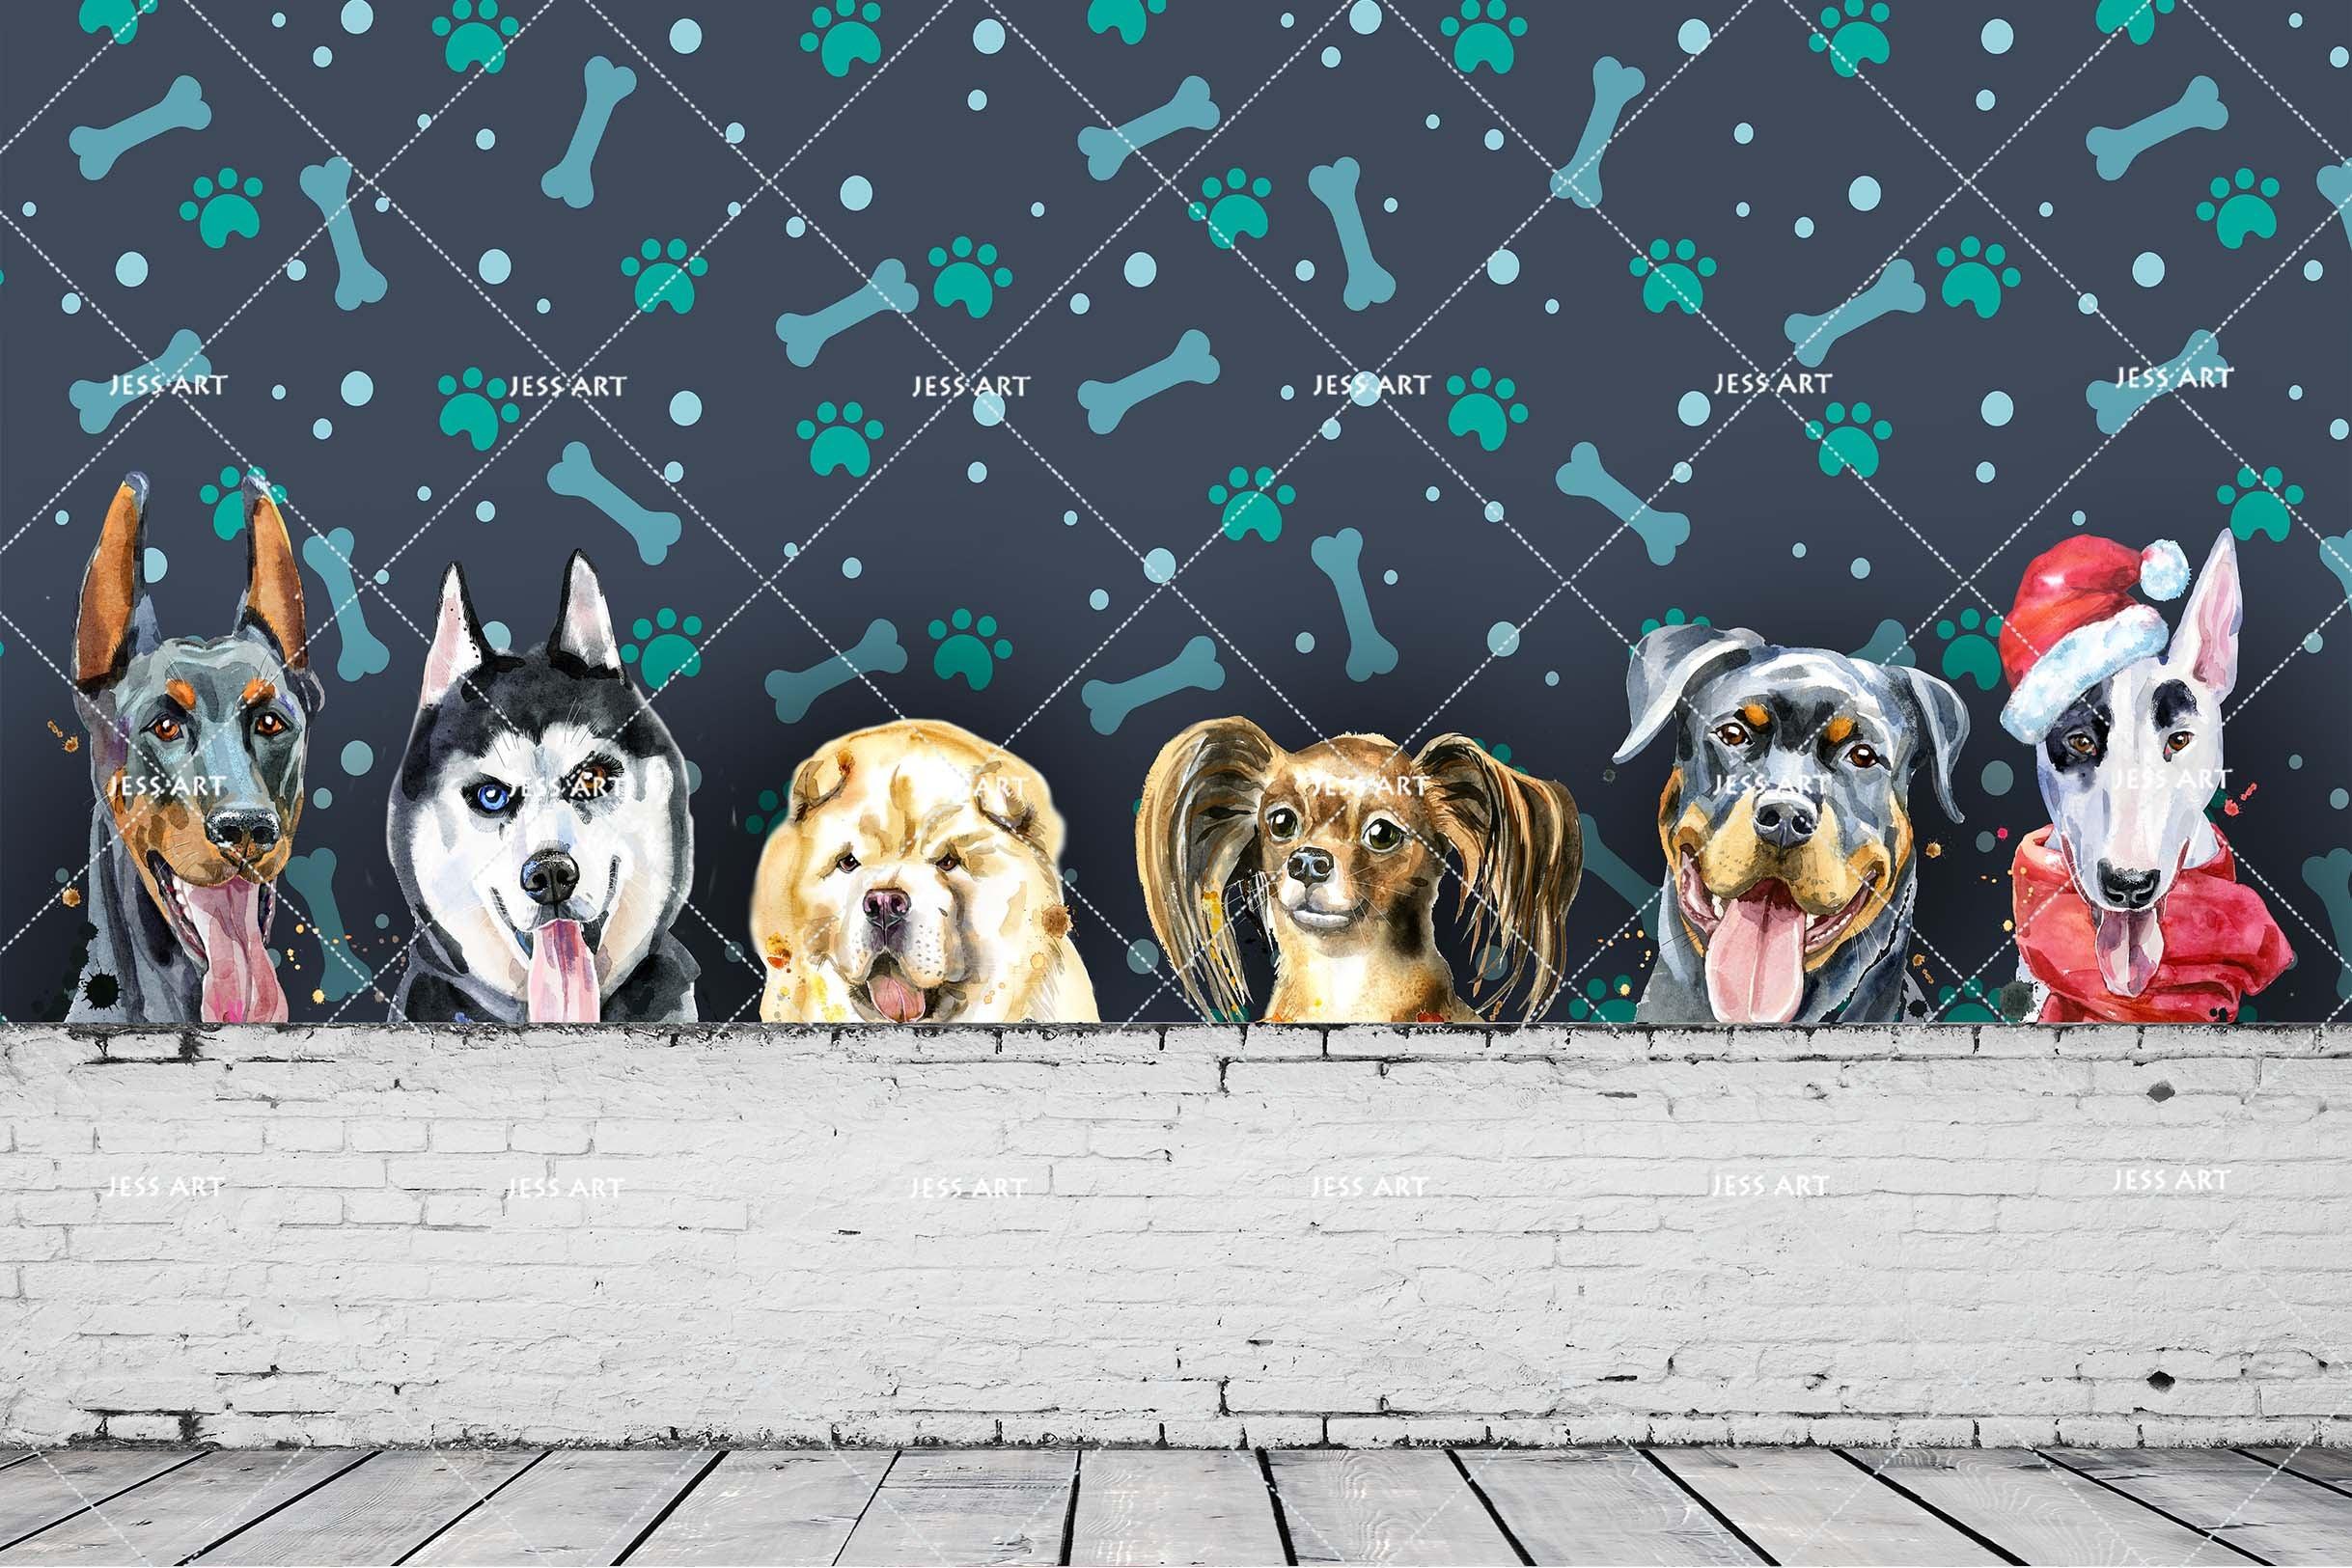 3D Different Dogs Wall Mural Wallpaper 04- Jess Art Decoration